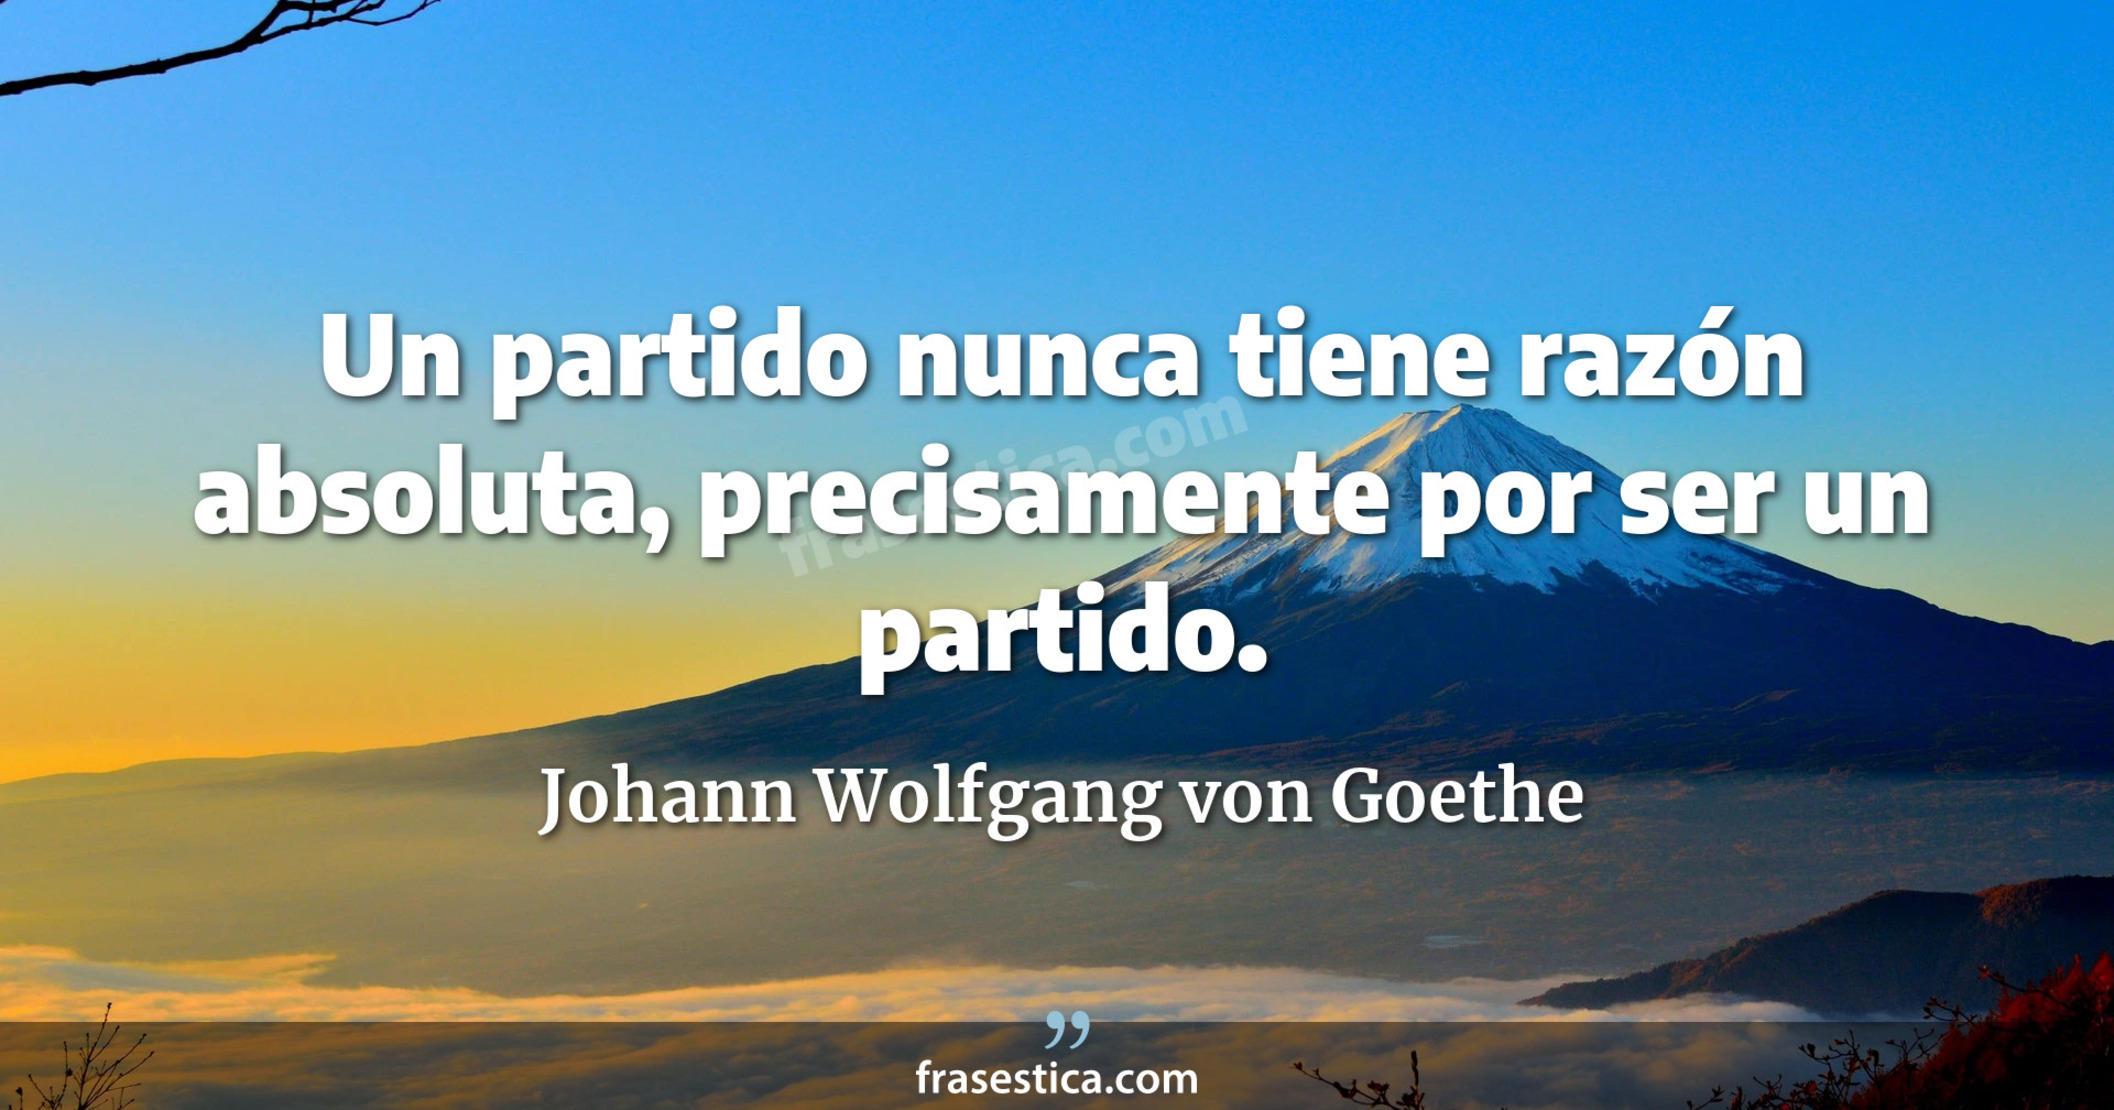 Un partido nunca tiene razón absoluta, precisamente por ser un partido. - Johann Wolfgang von Goethe